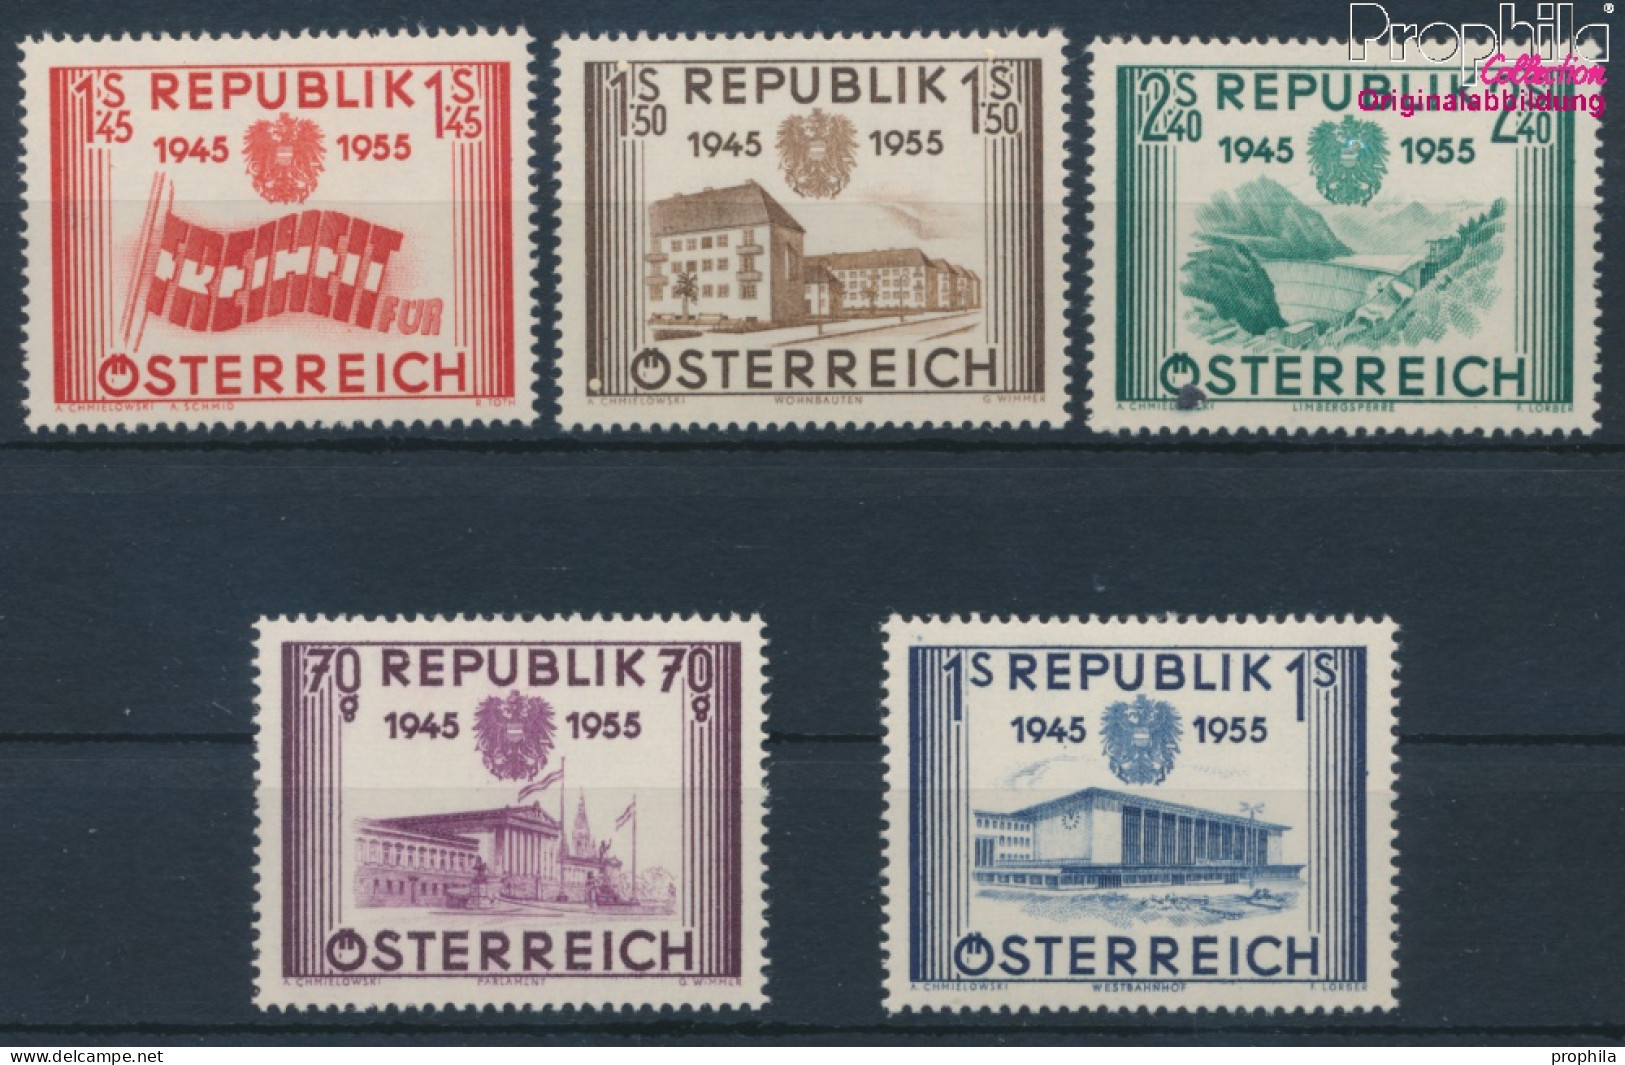 Österreich 1012-1016 (kompl.Ausg.) Postfrisch 1955 Unabhängigkeit (10405426 - Ongebruikt